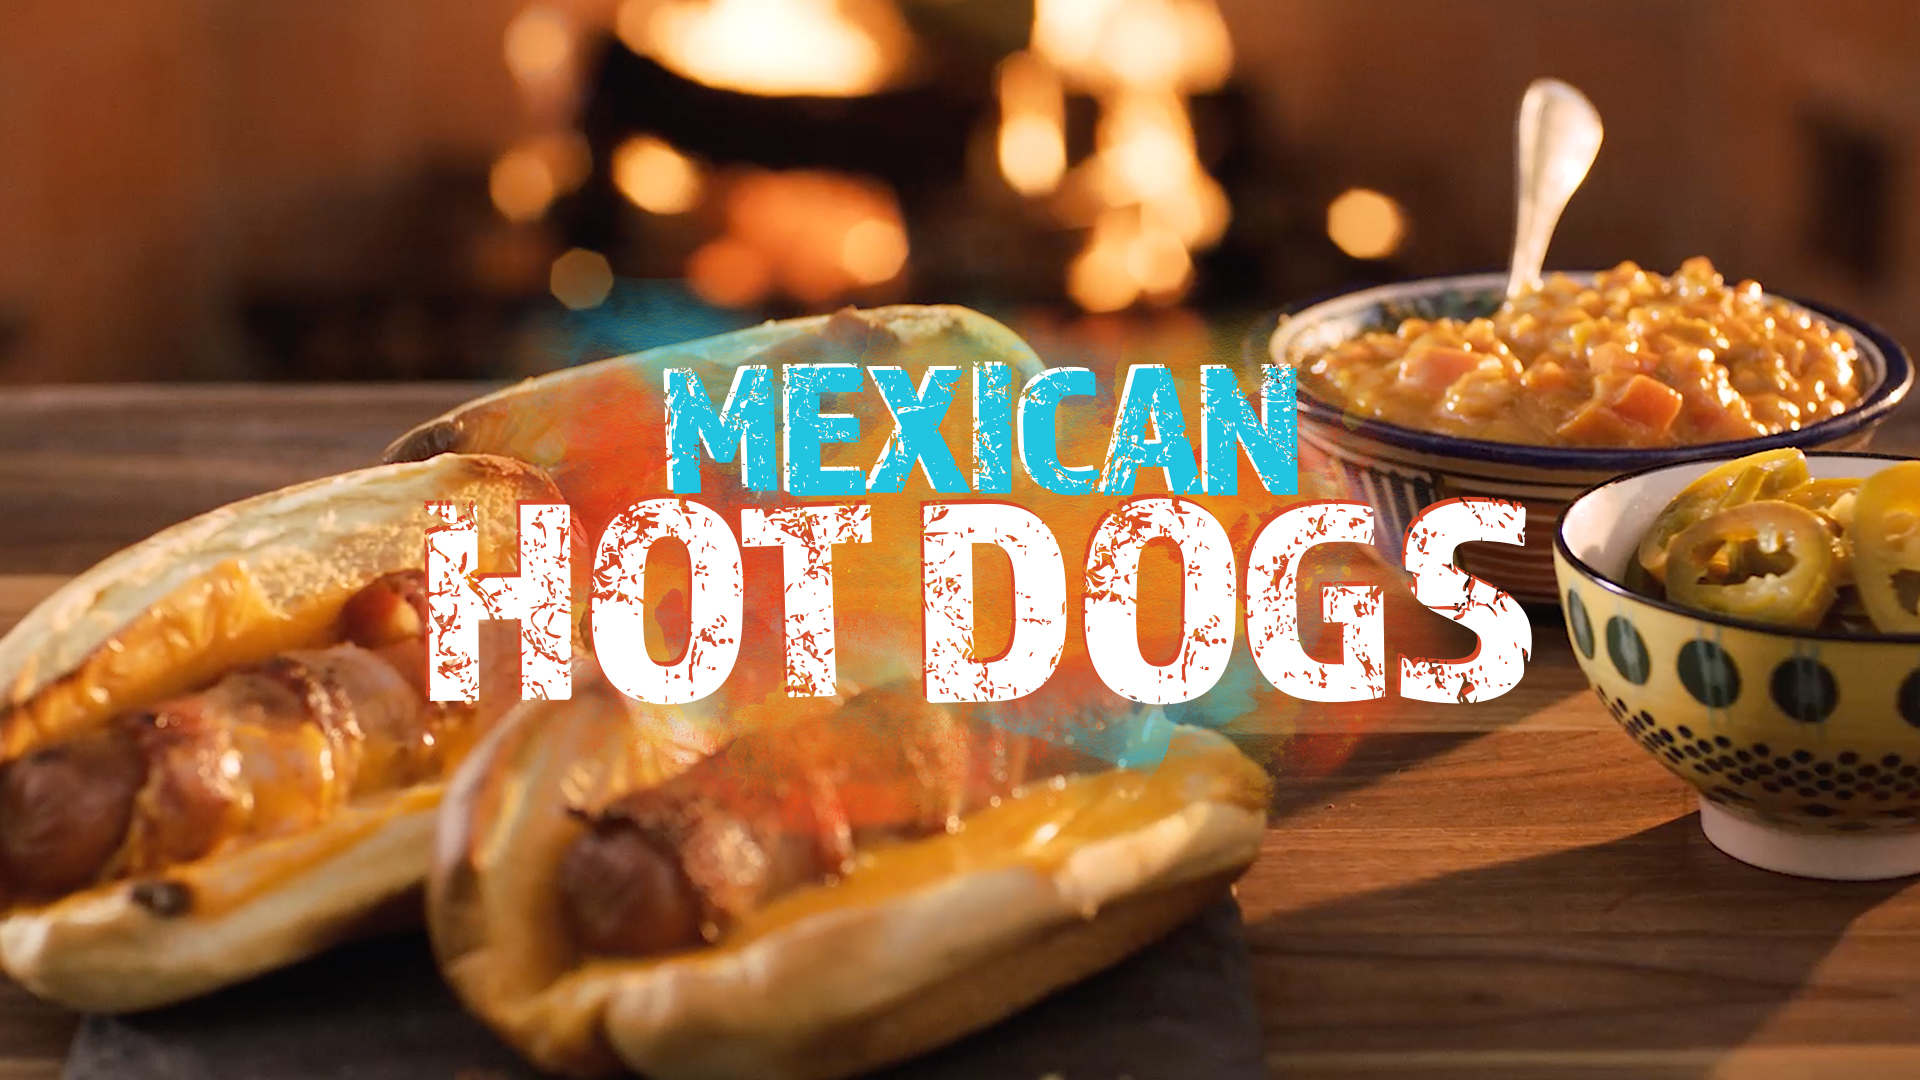 Pump Up El Sabor Episodio 1 – Hot Dogs a la Mexicana